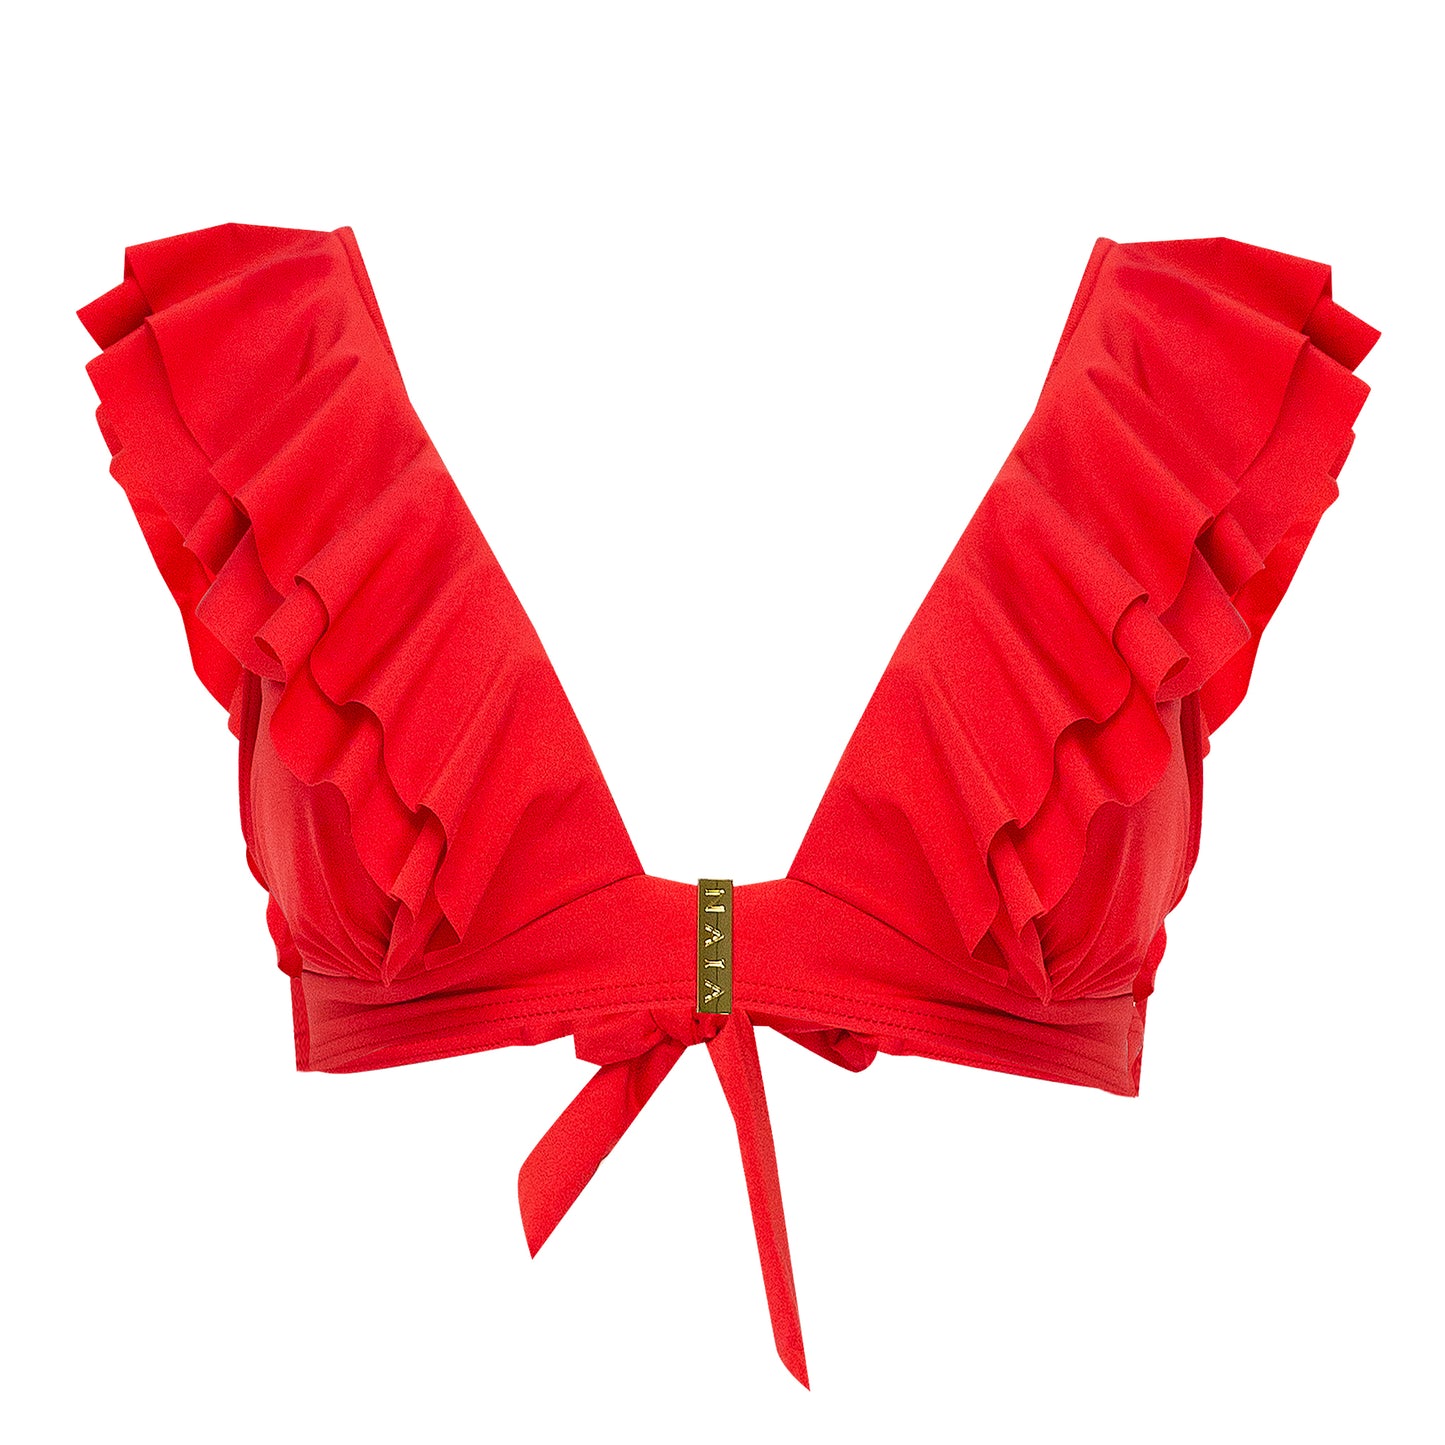 Red Bikini Top with Naia Gold Trims